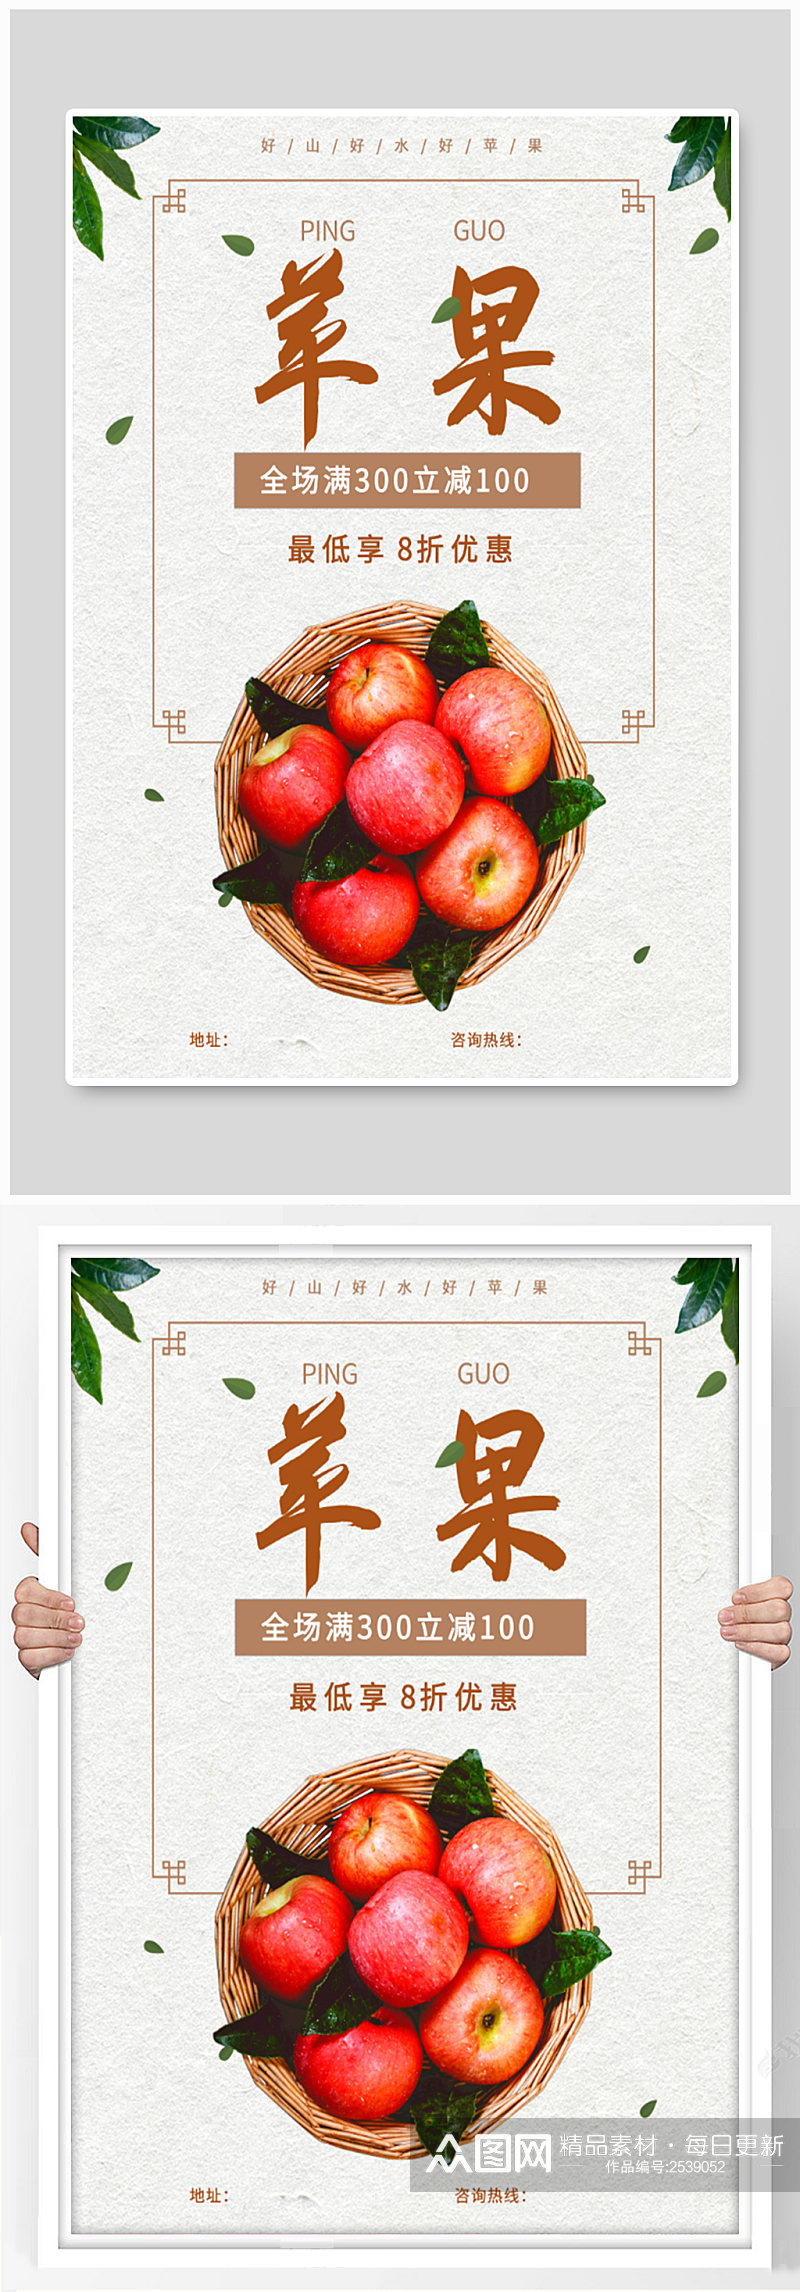 水果店苹果促销海报素材